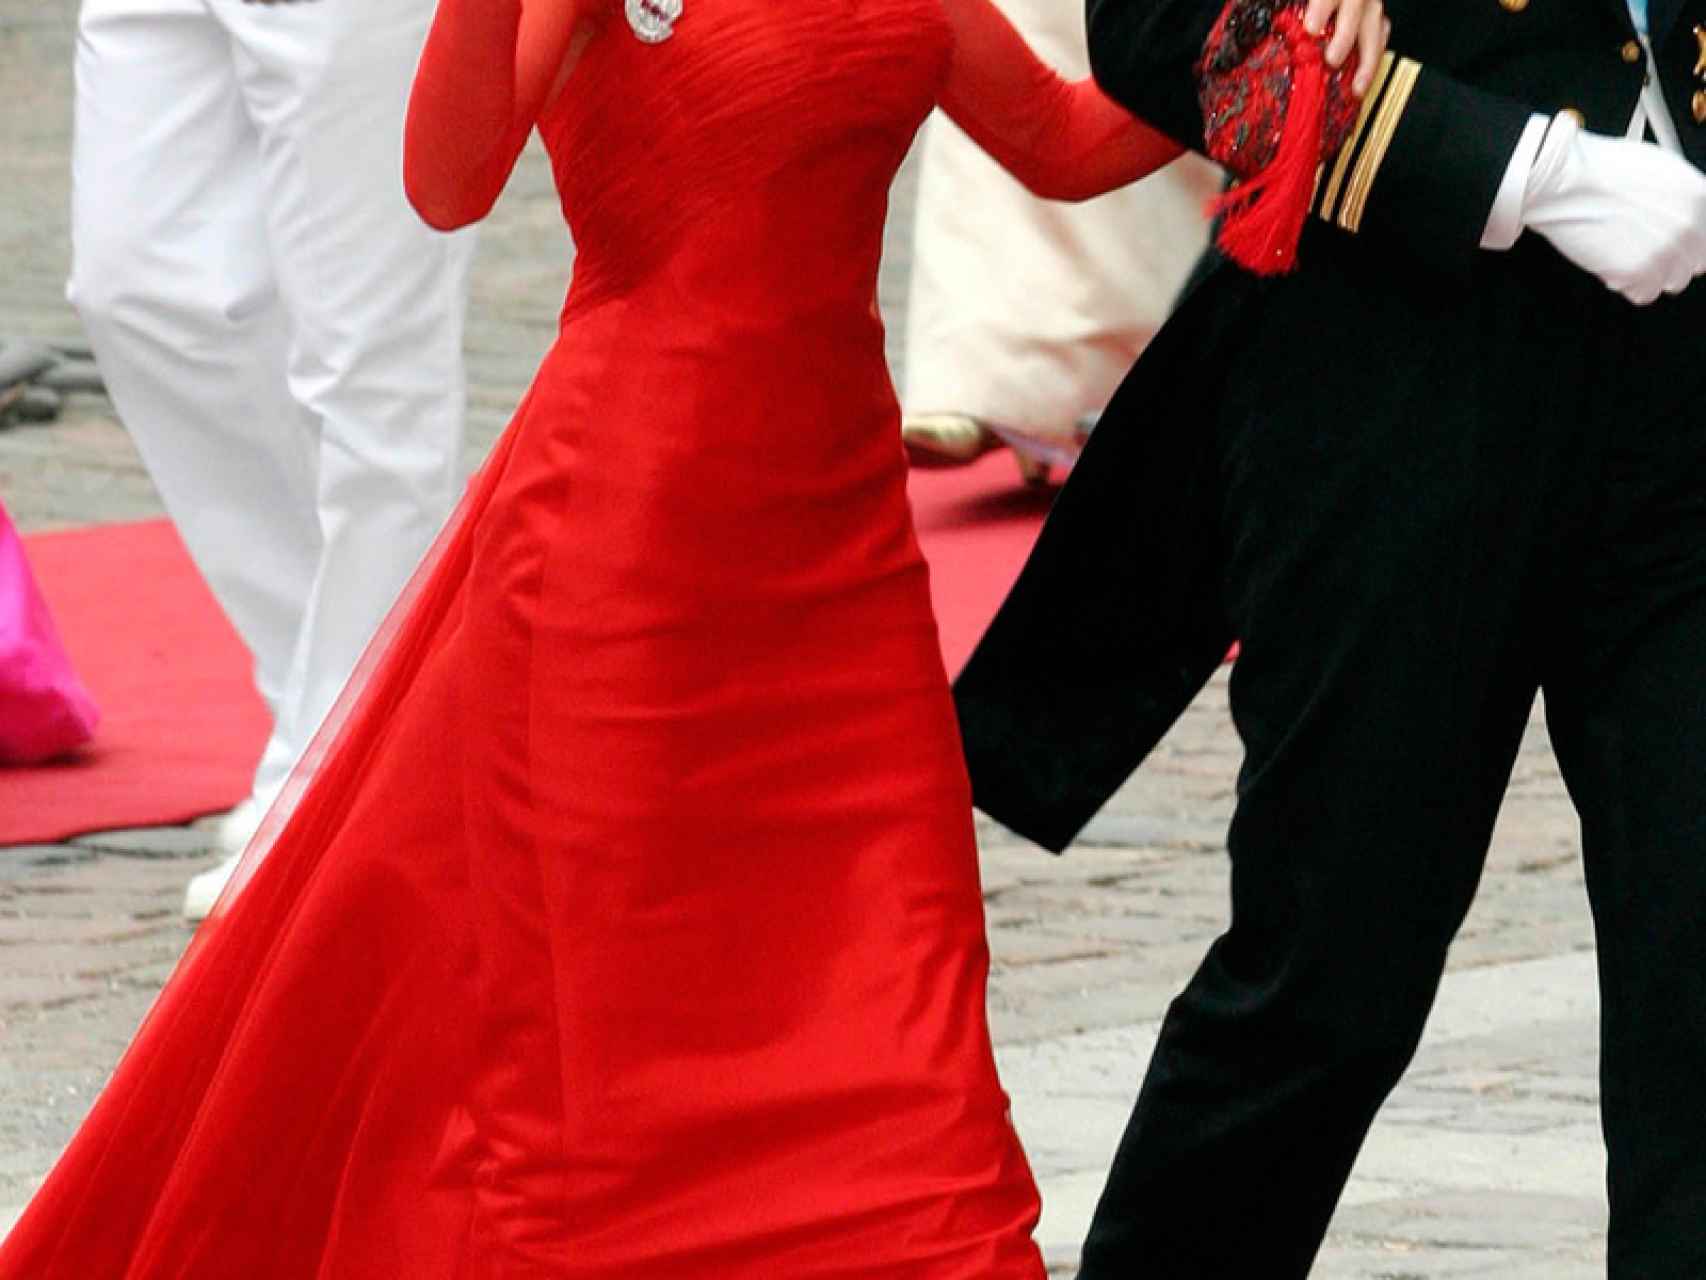 El vestido de Caprile causó sensación en toda Europa.